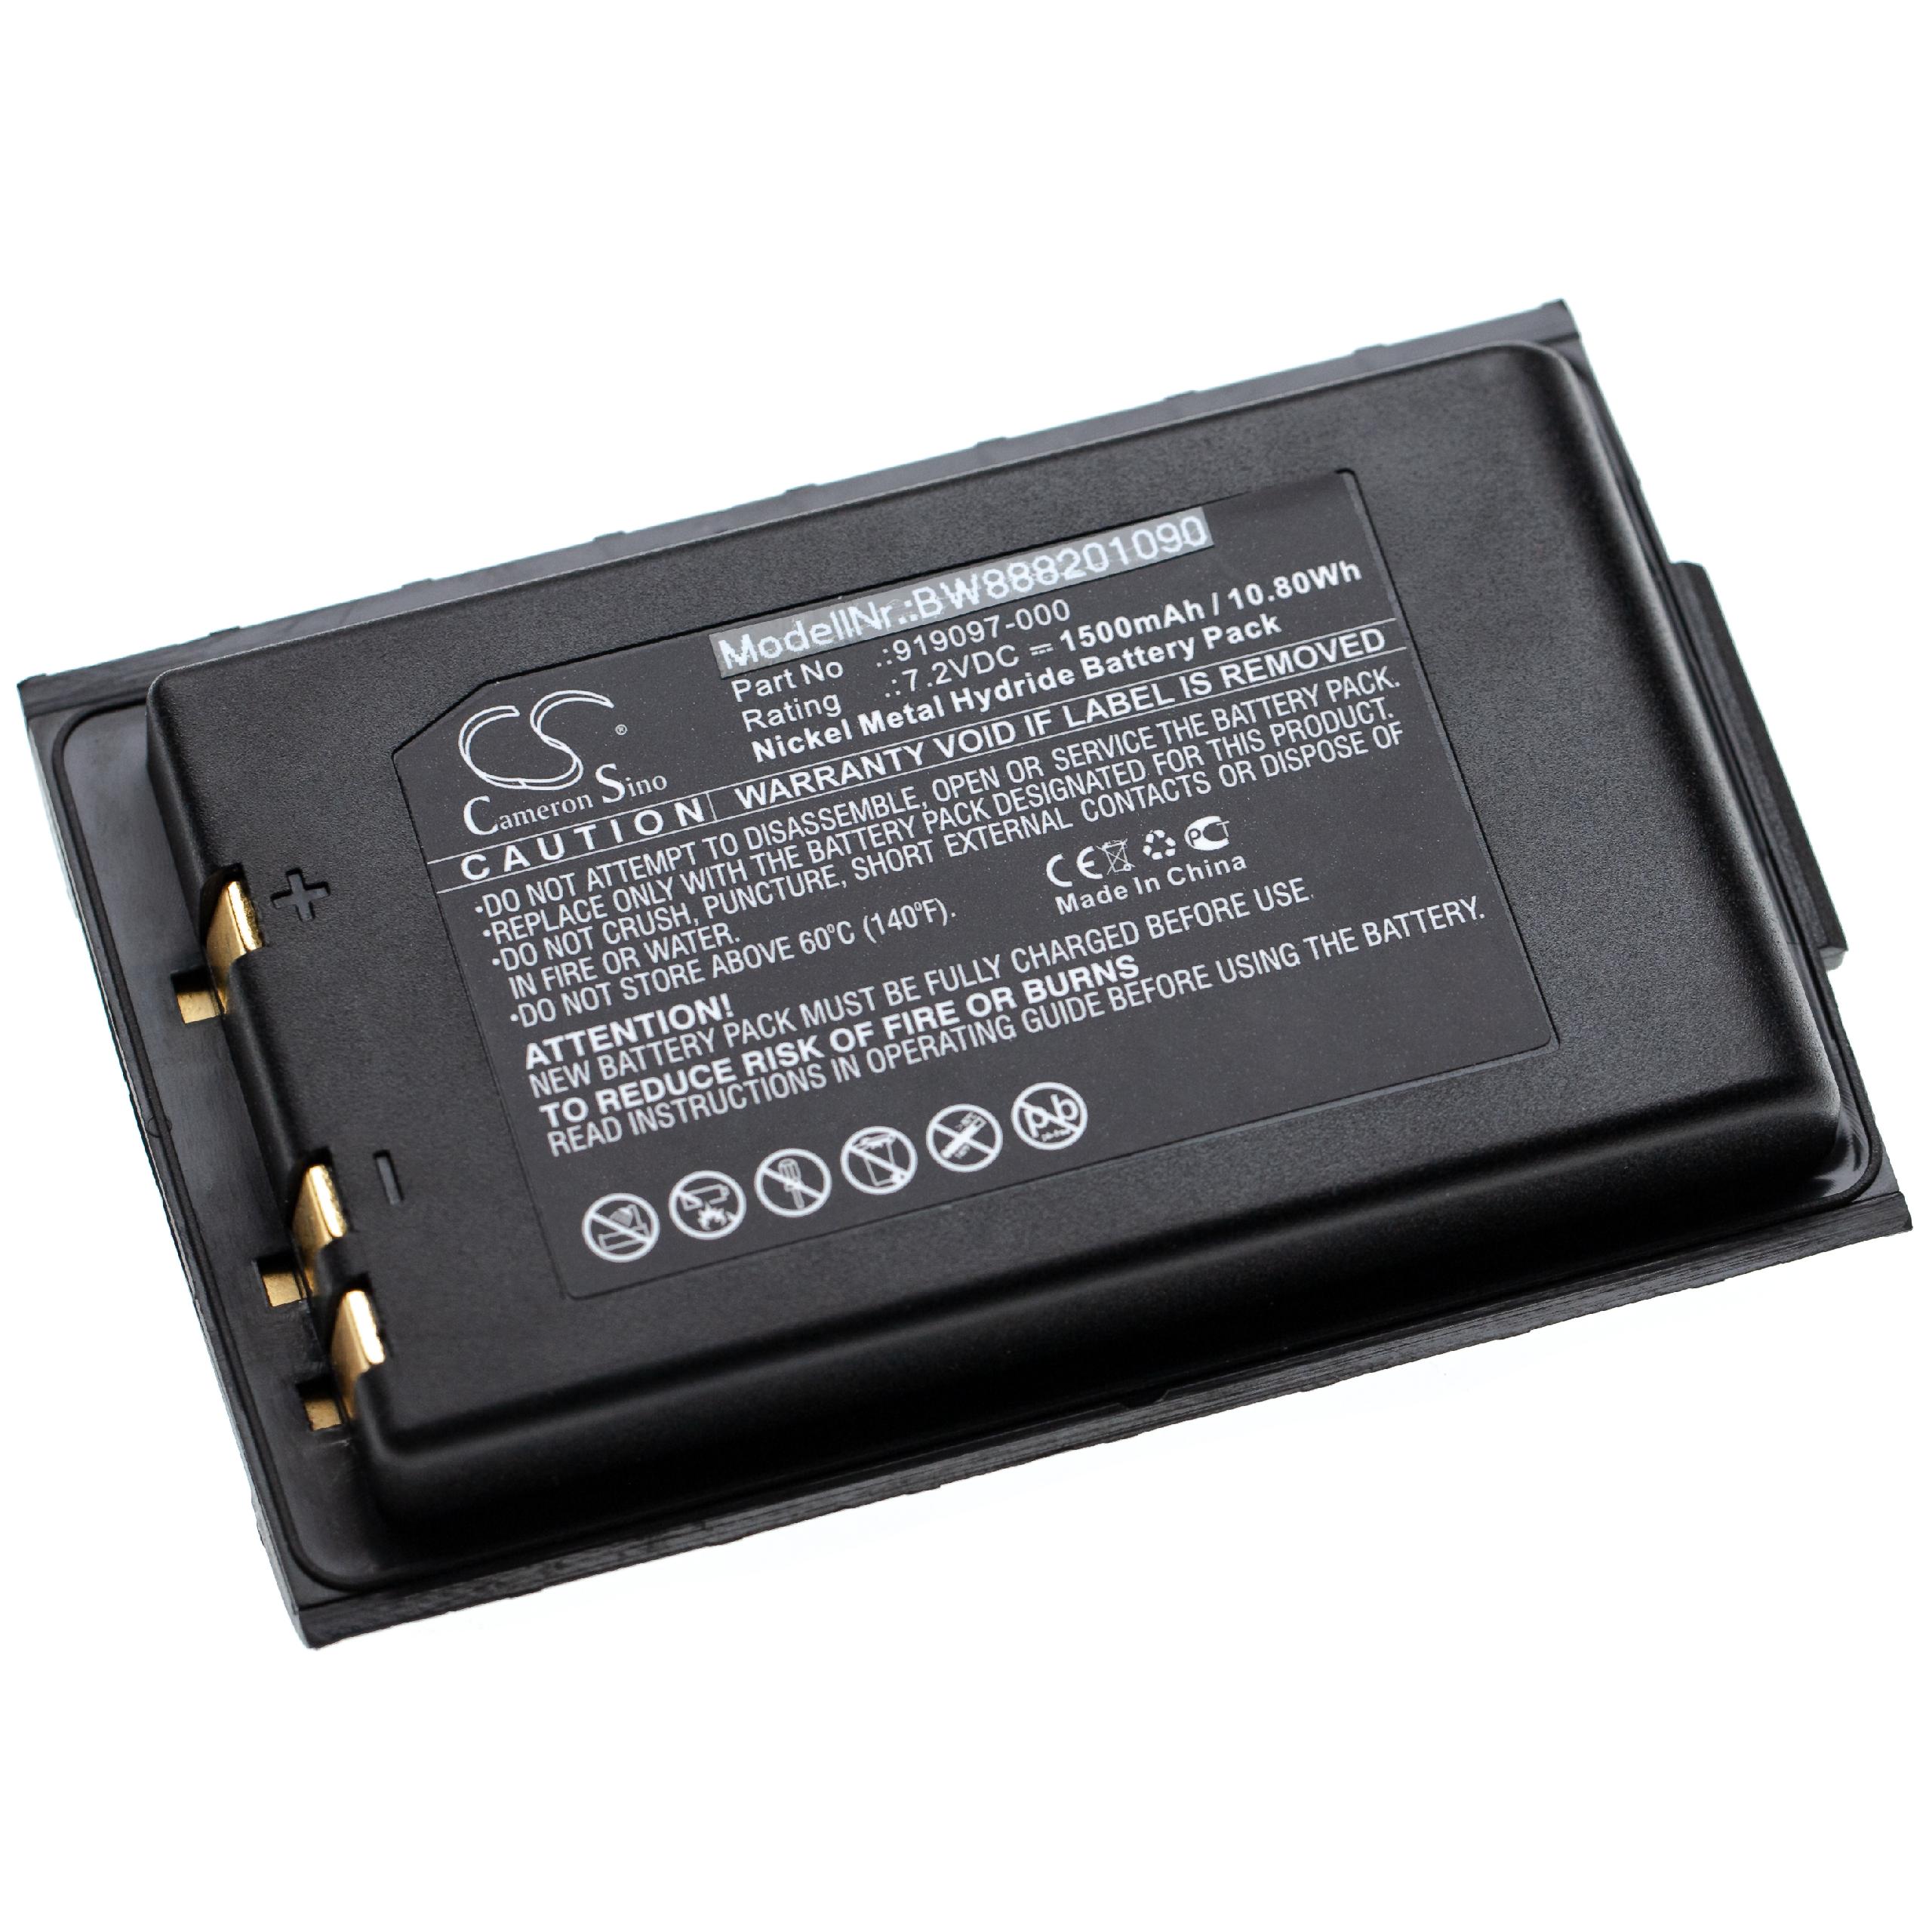 Batterie remplace Akerstroms 919097-000 pour télécomande industrielle - 1500mAh 7,2V NiMH